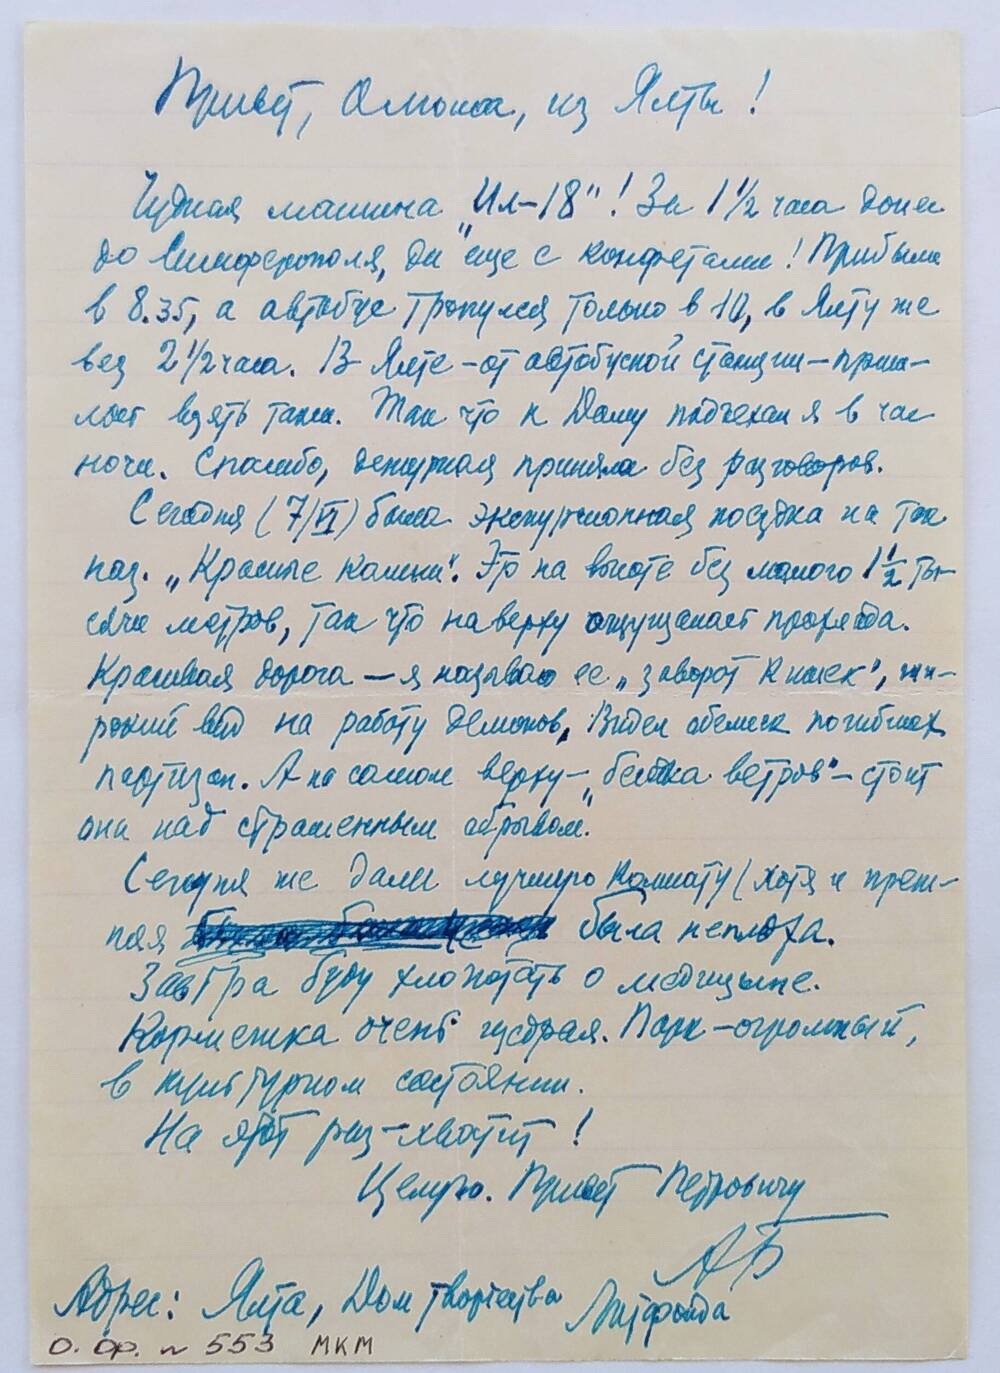 Письмо Ольге Бауэр от отца,  датировано 7/VI/63 г., написано на тетрадном листе в линию, чернильной ручкой синего цвета